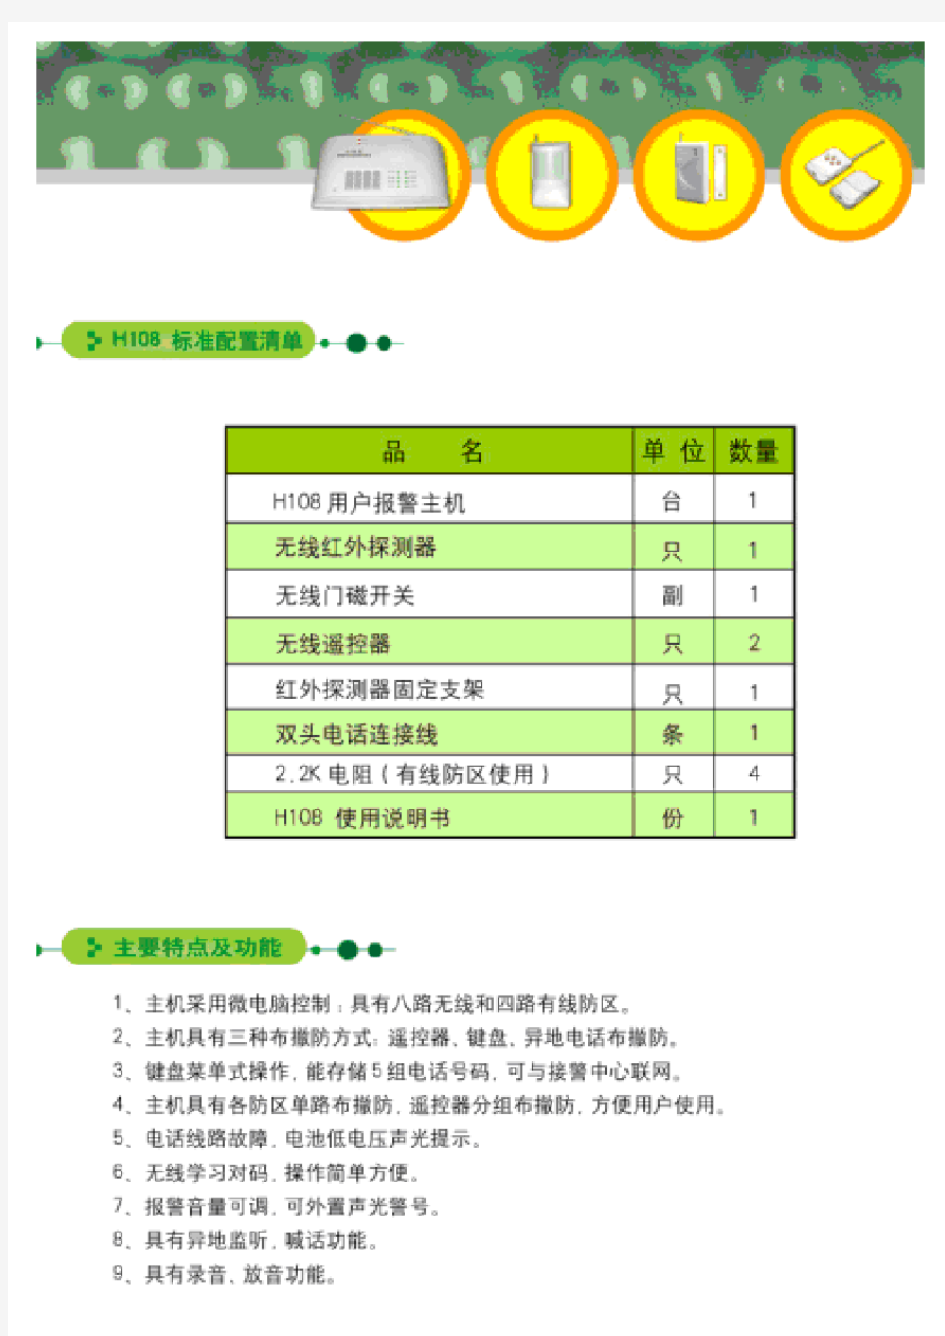 上海优周报警系统H108增强型说明书PDF